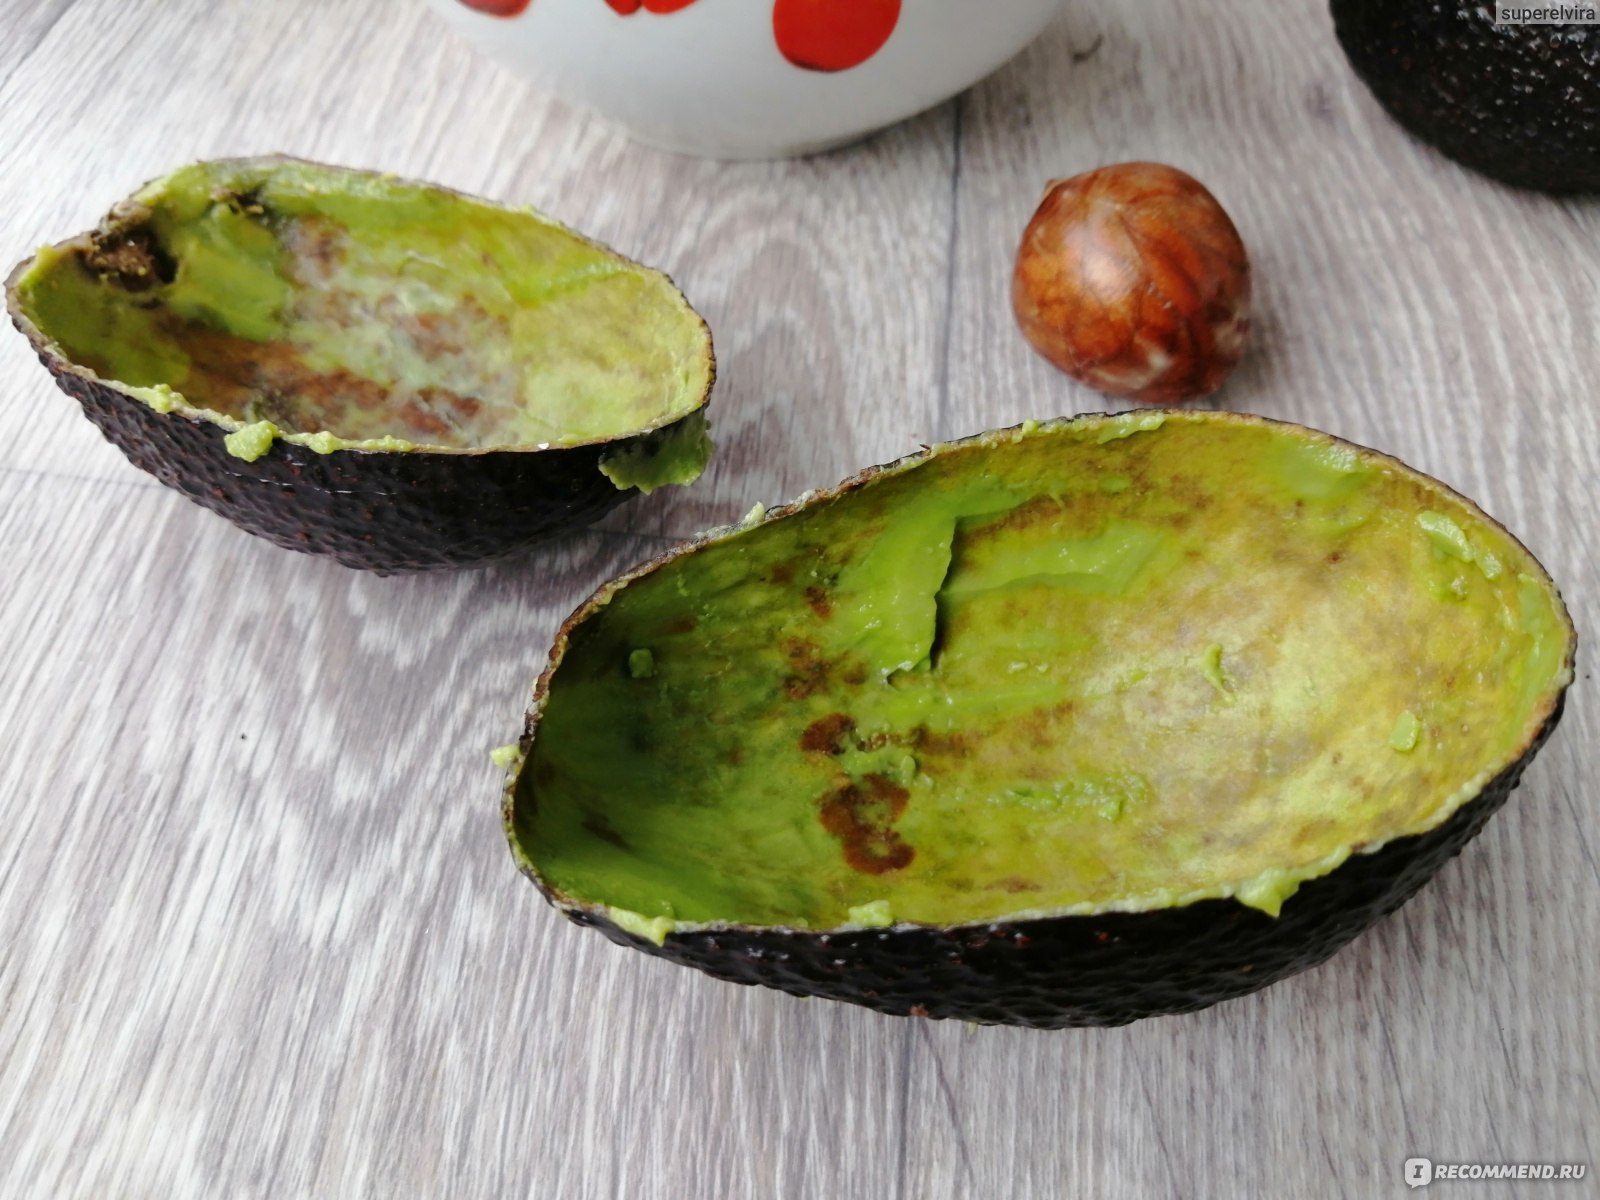 Внутри темного авокадо красивая косточка шарообразной формы